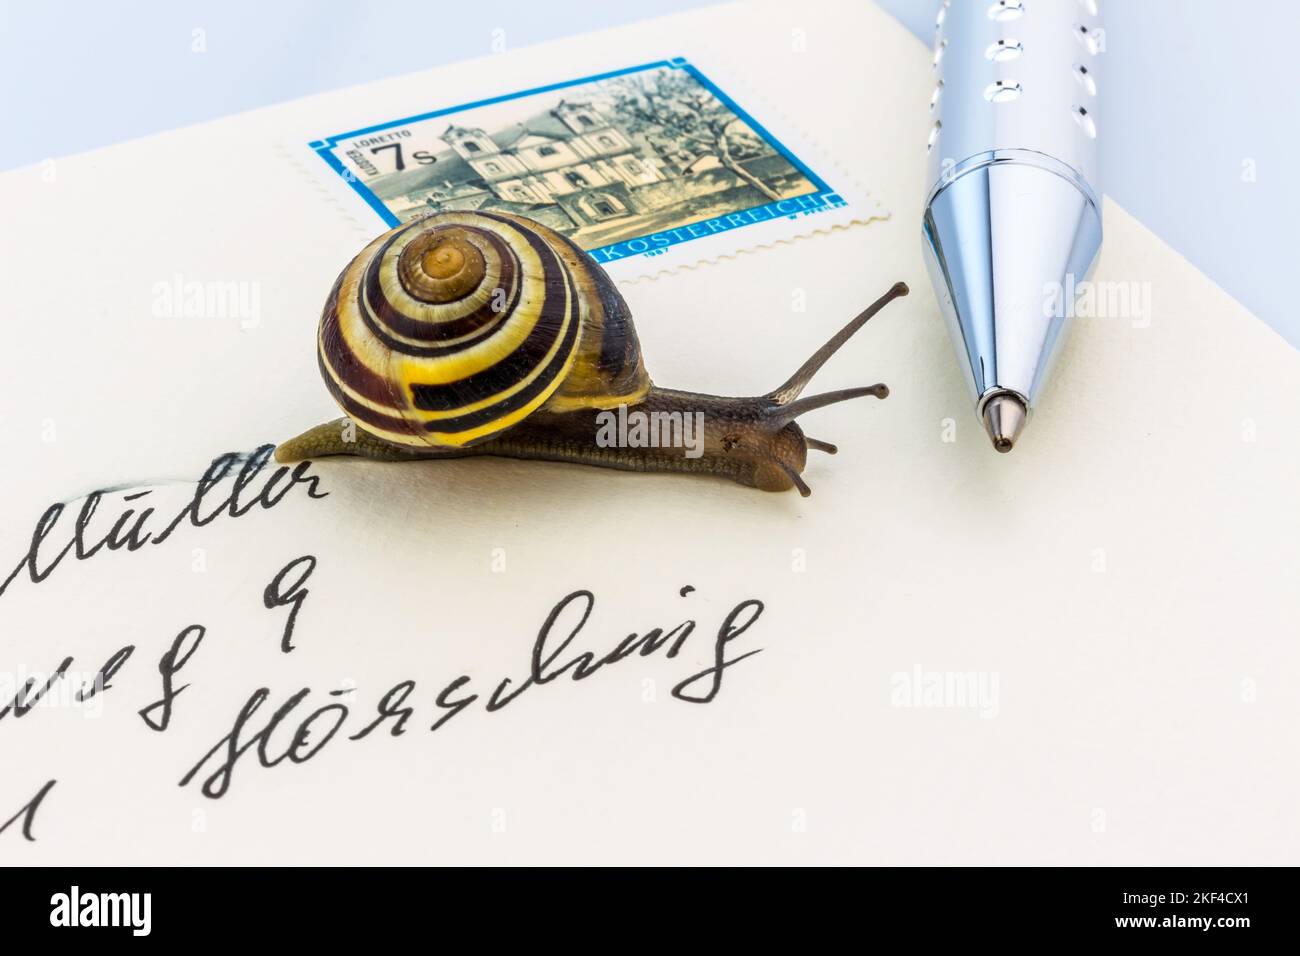 Schneckenpost, Eine Schnecke kriecht auf einem Briefumschlag, Symbolfoto, Stock Photo